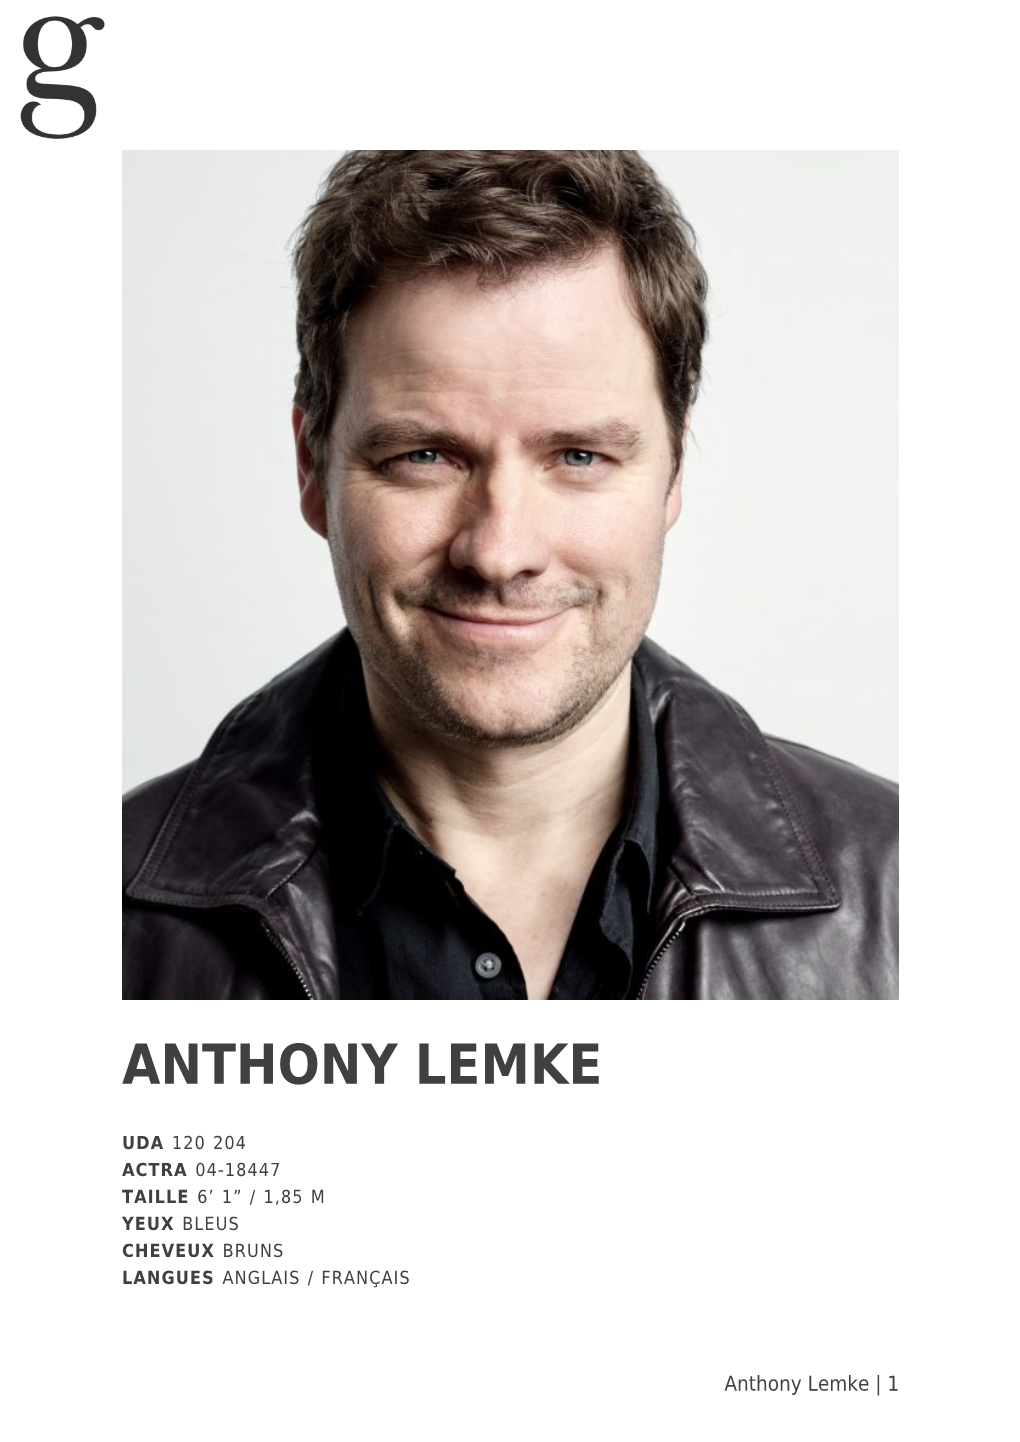 Anthony Lemke